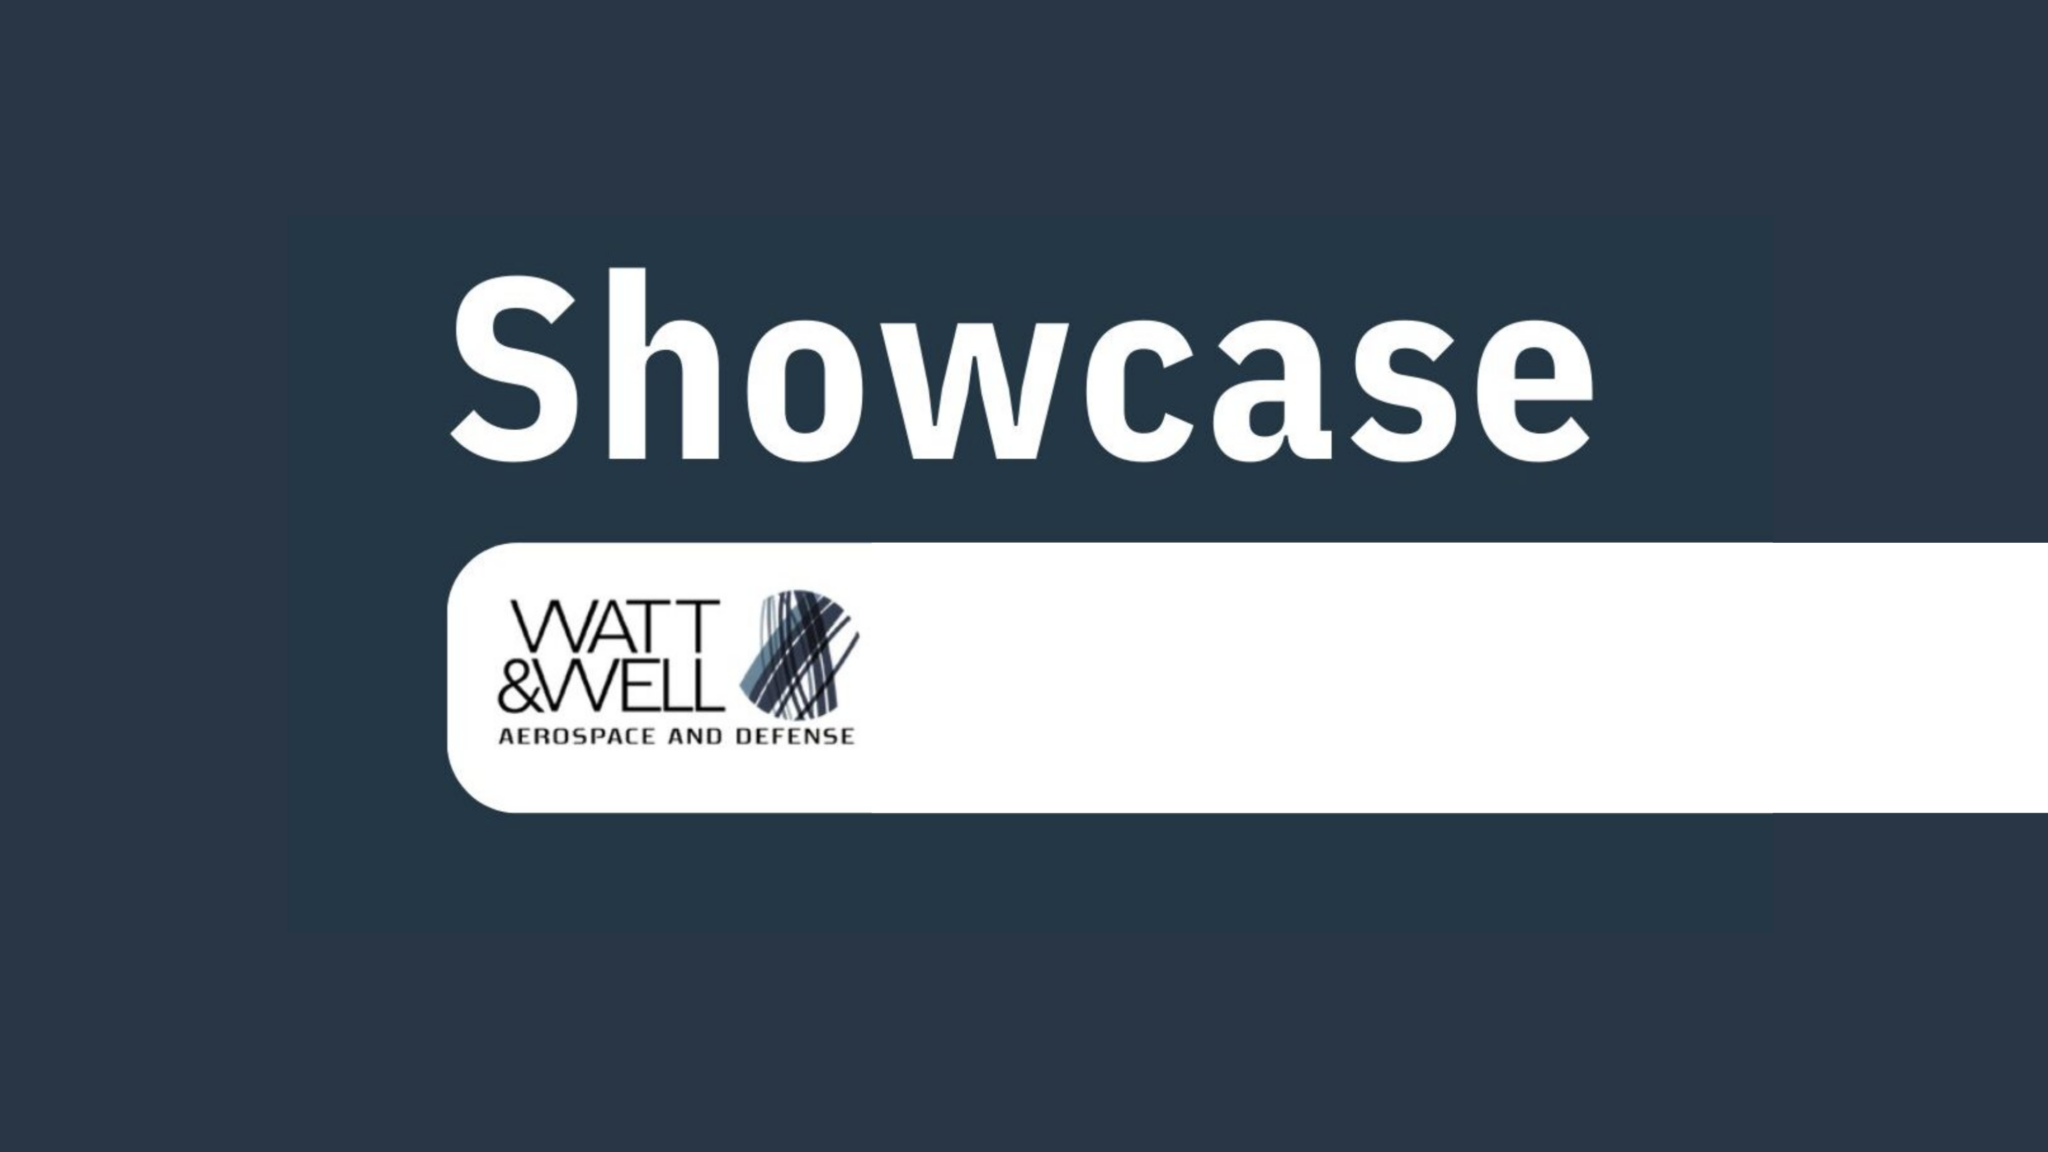 Watt & Well showcase